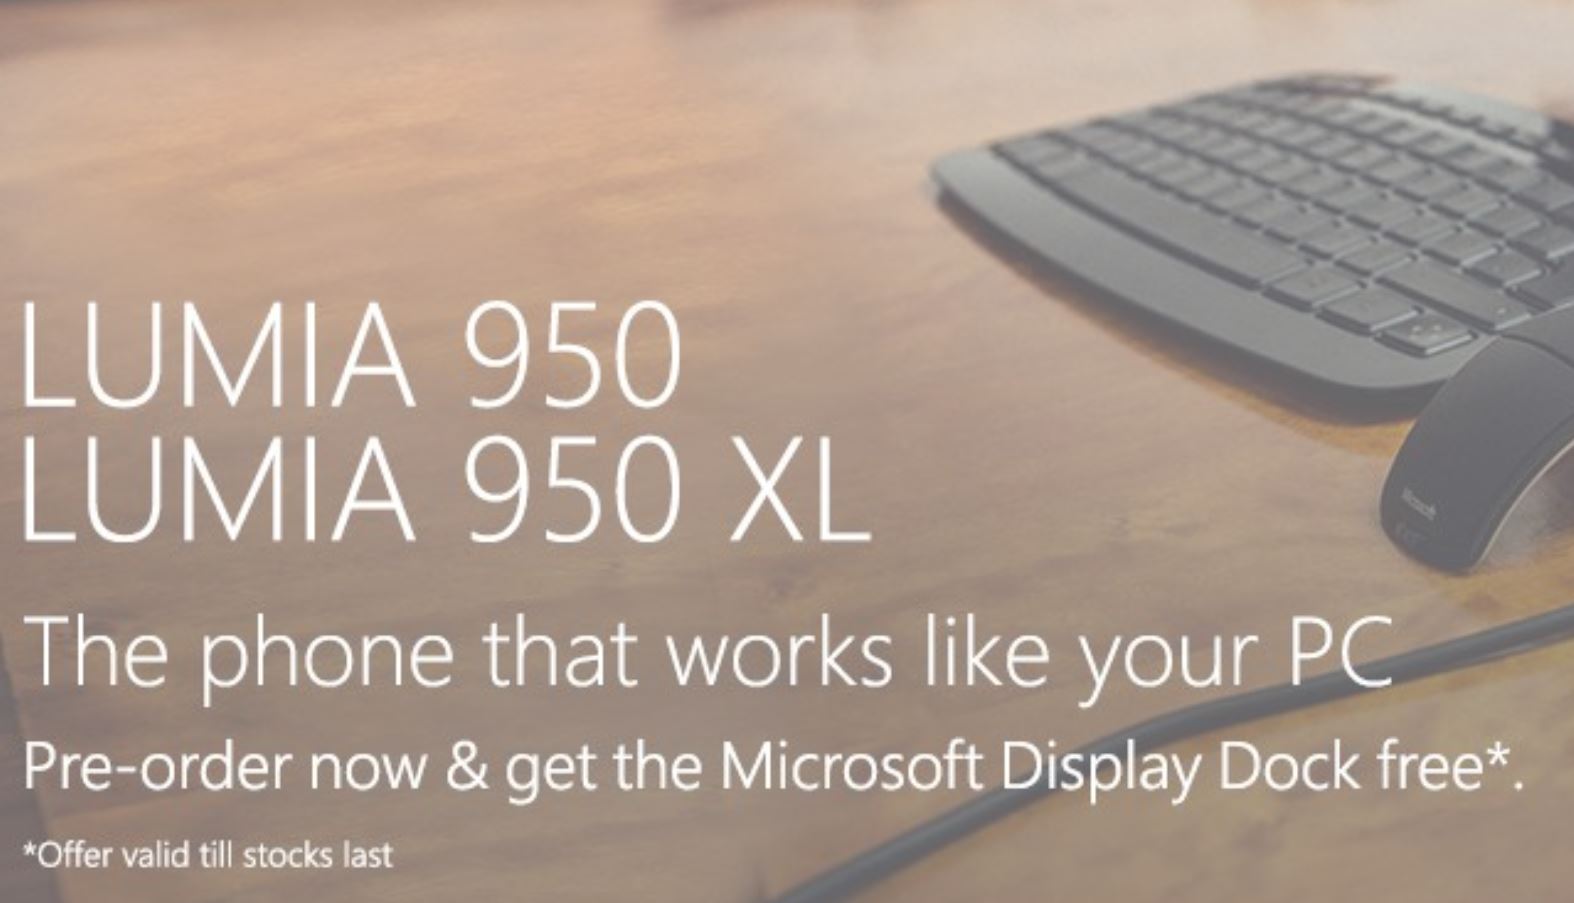 Lumia 950 and 950 XL Pre-order